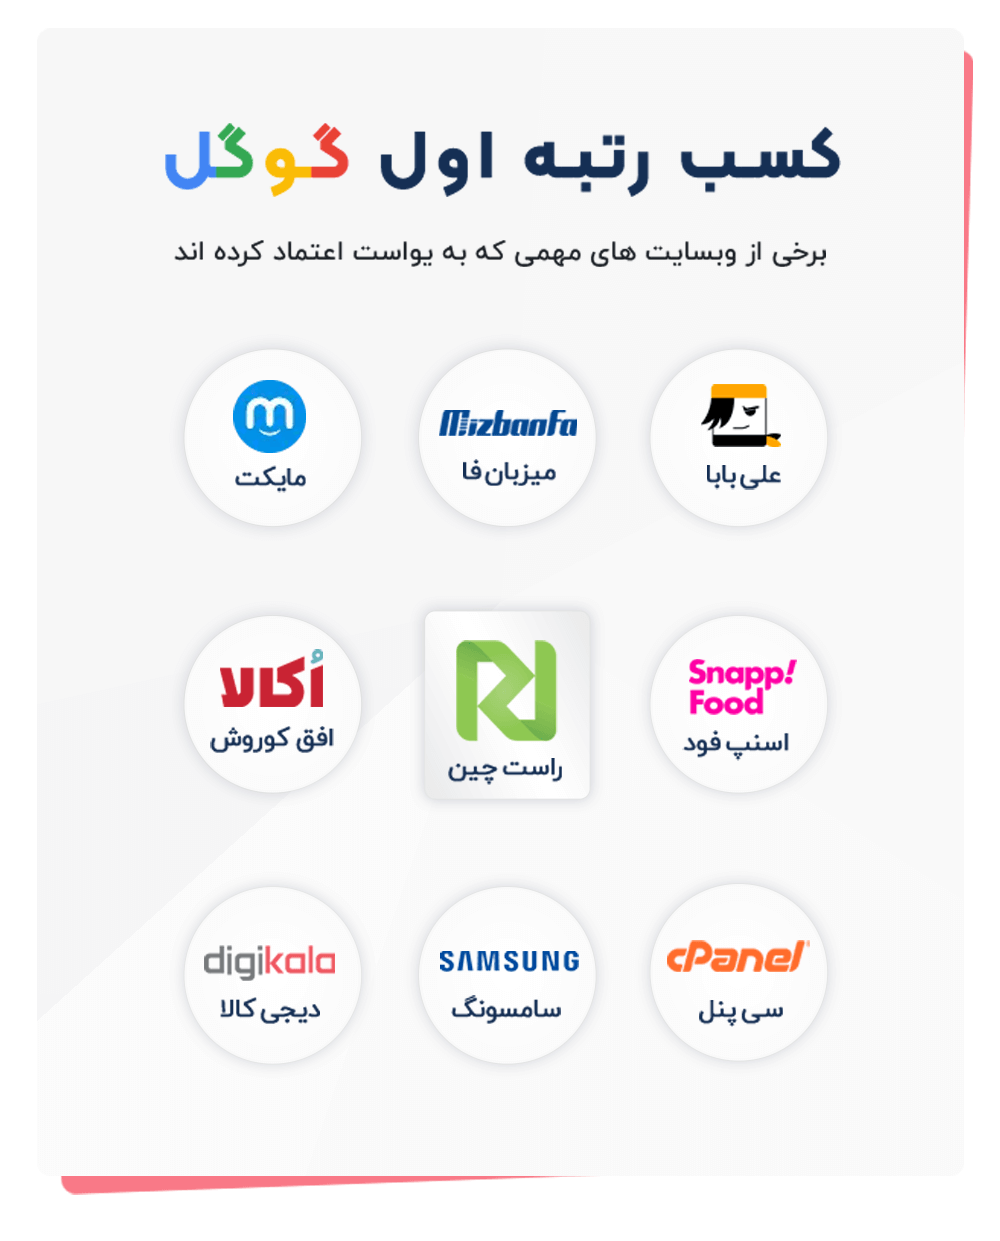 وب سایت های ایرانی که از yoast seo استفاده کرده اند